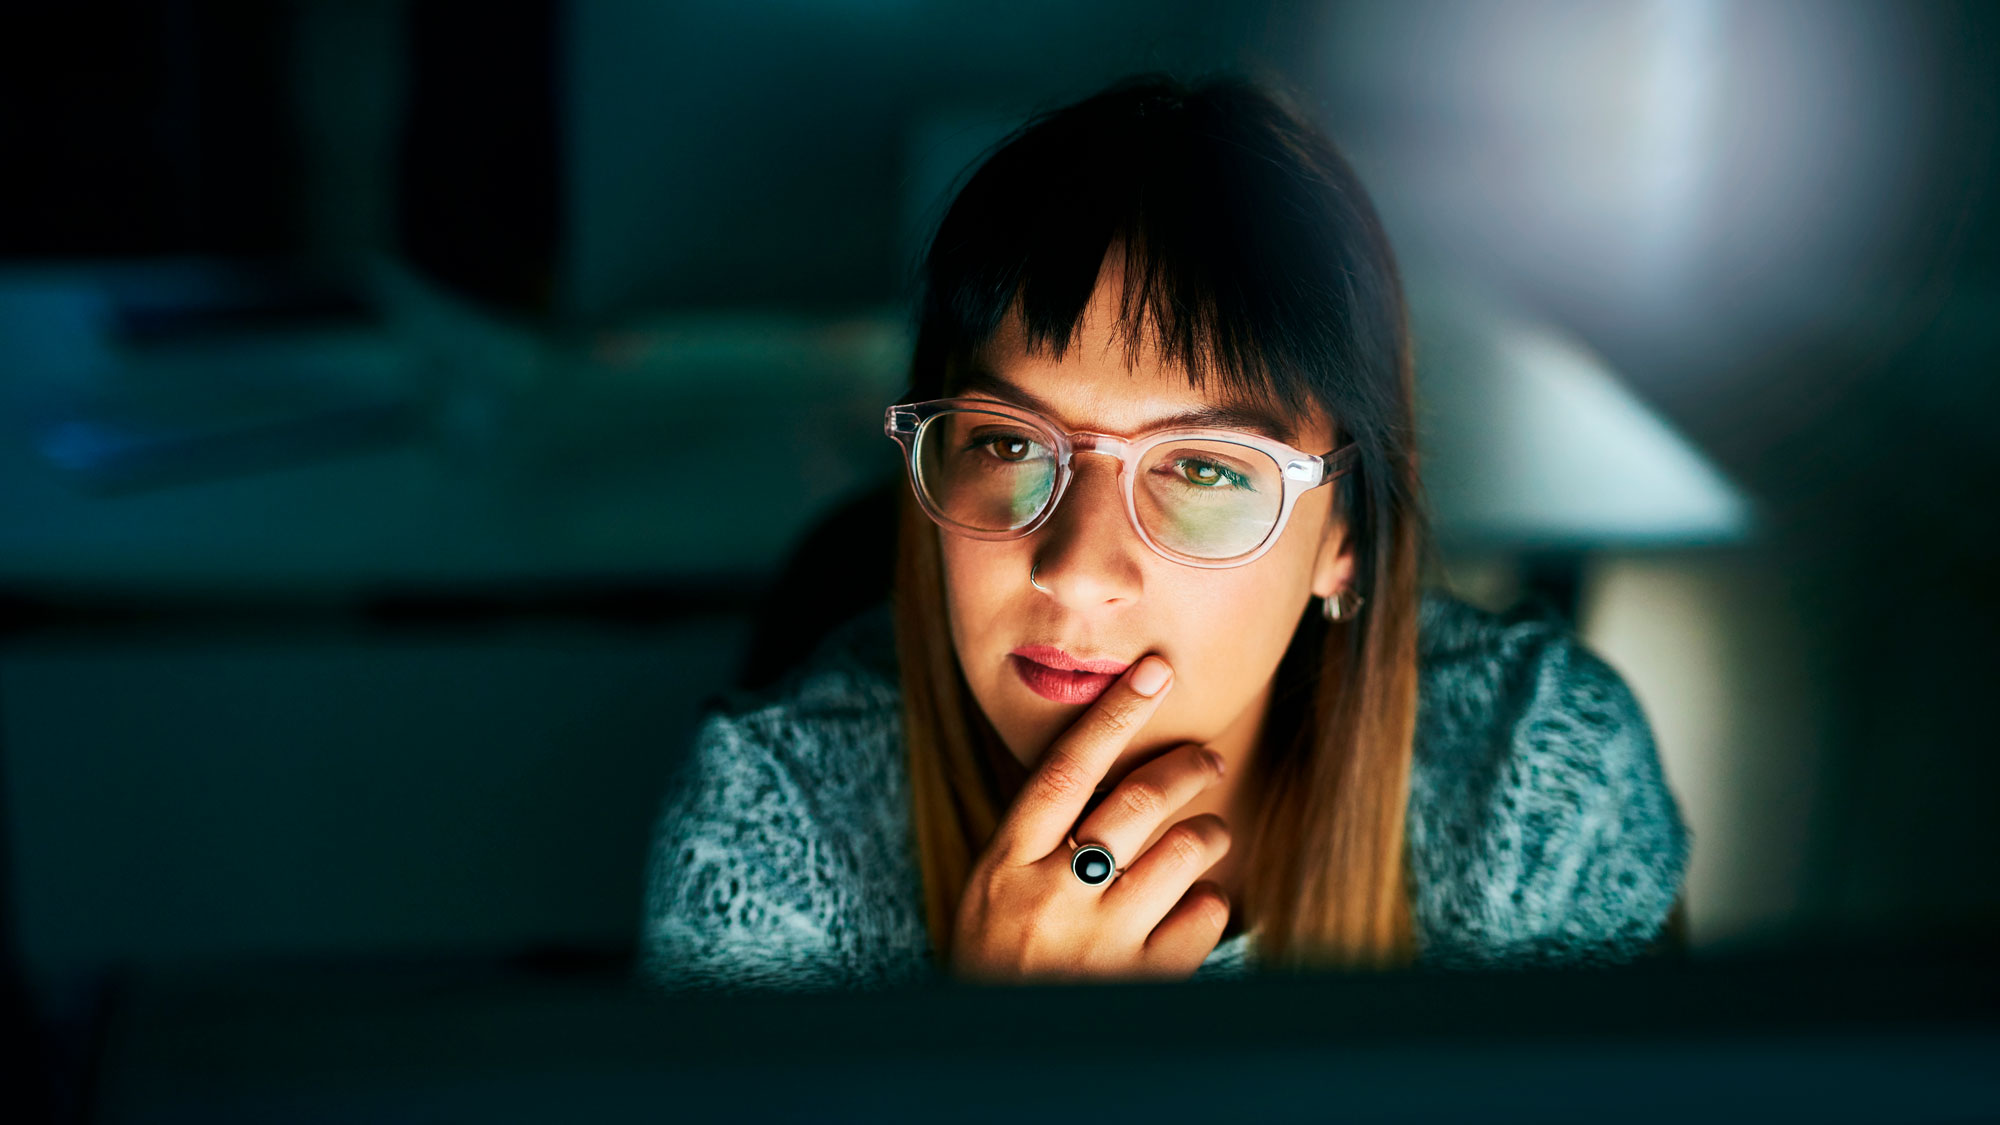 ung kvinne med langt hår og briller sitter i mørket og ser på opplyst dataskjerm